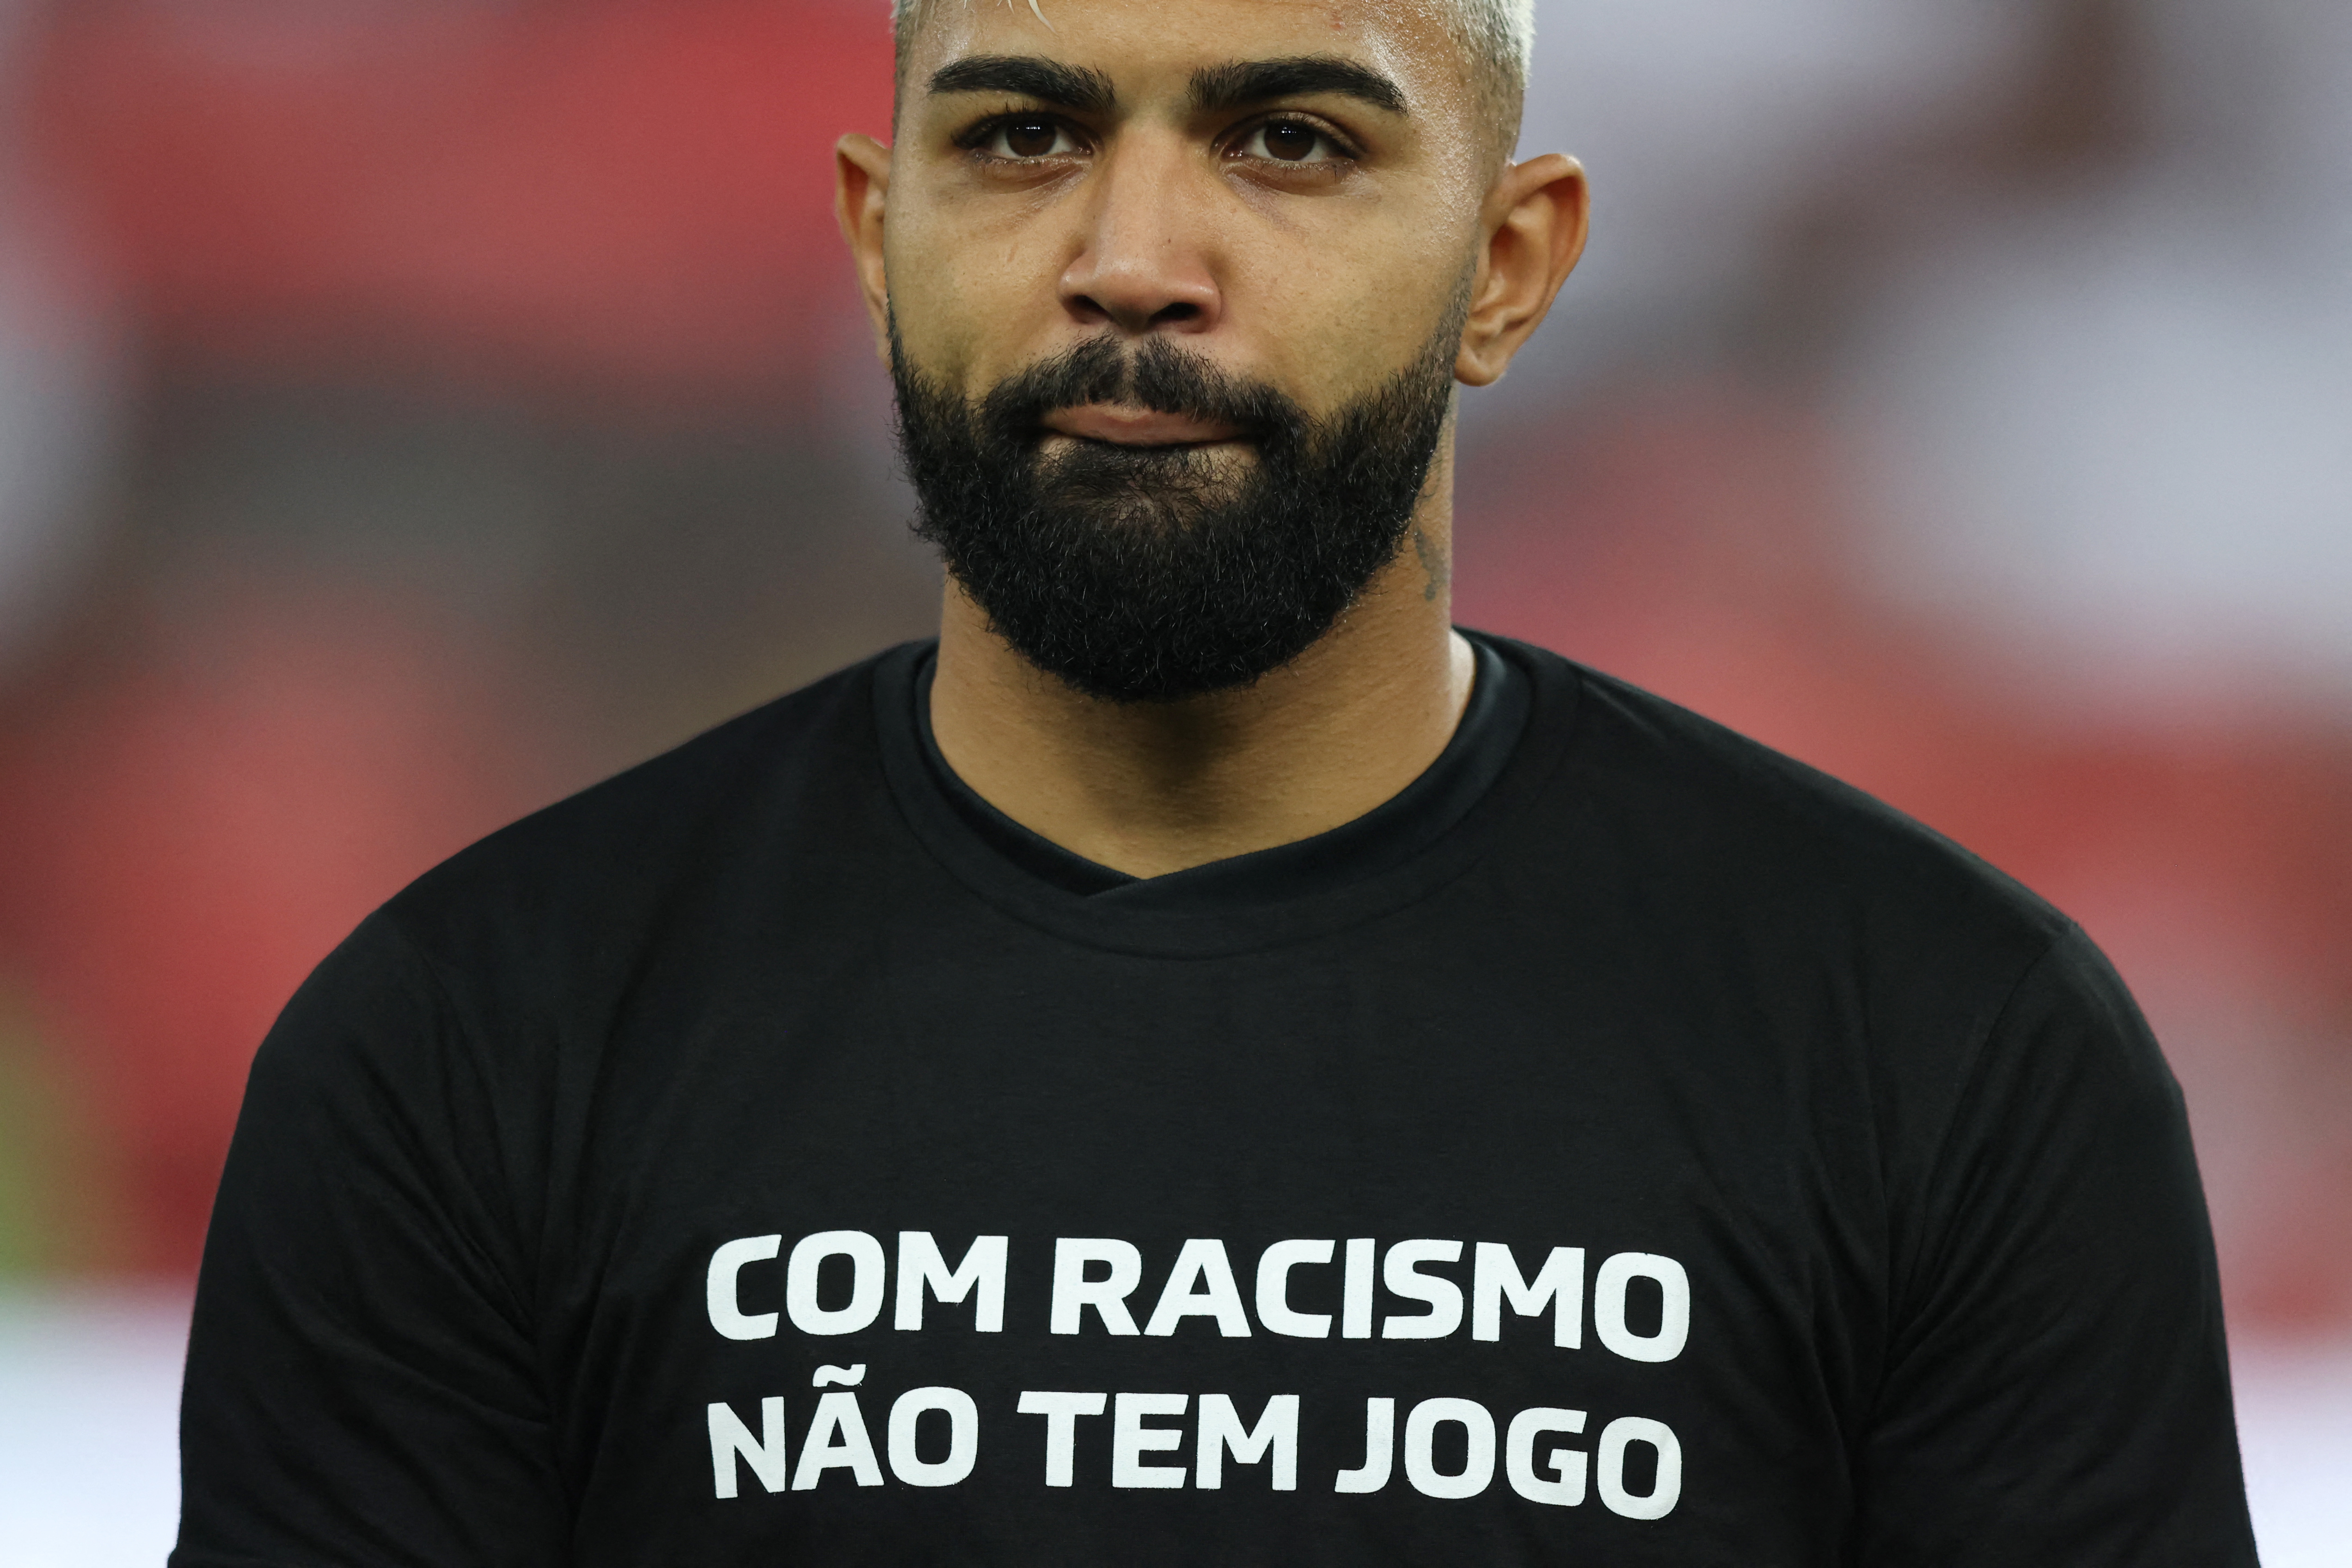 Gabriel Barbosa con una remera contra el racismo (REUTERS/Sergio Moraes)